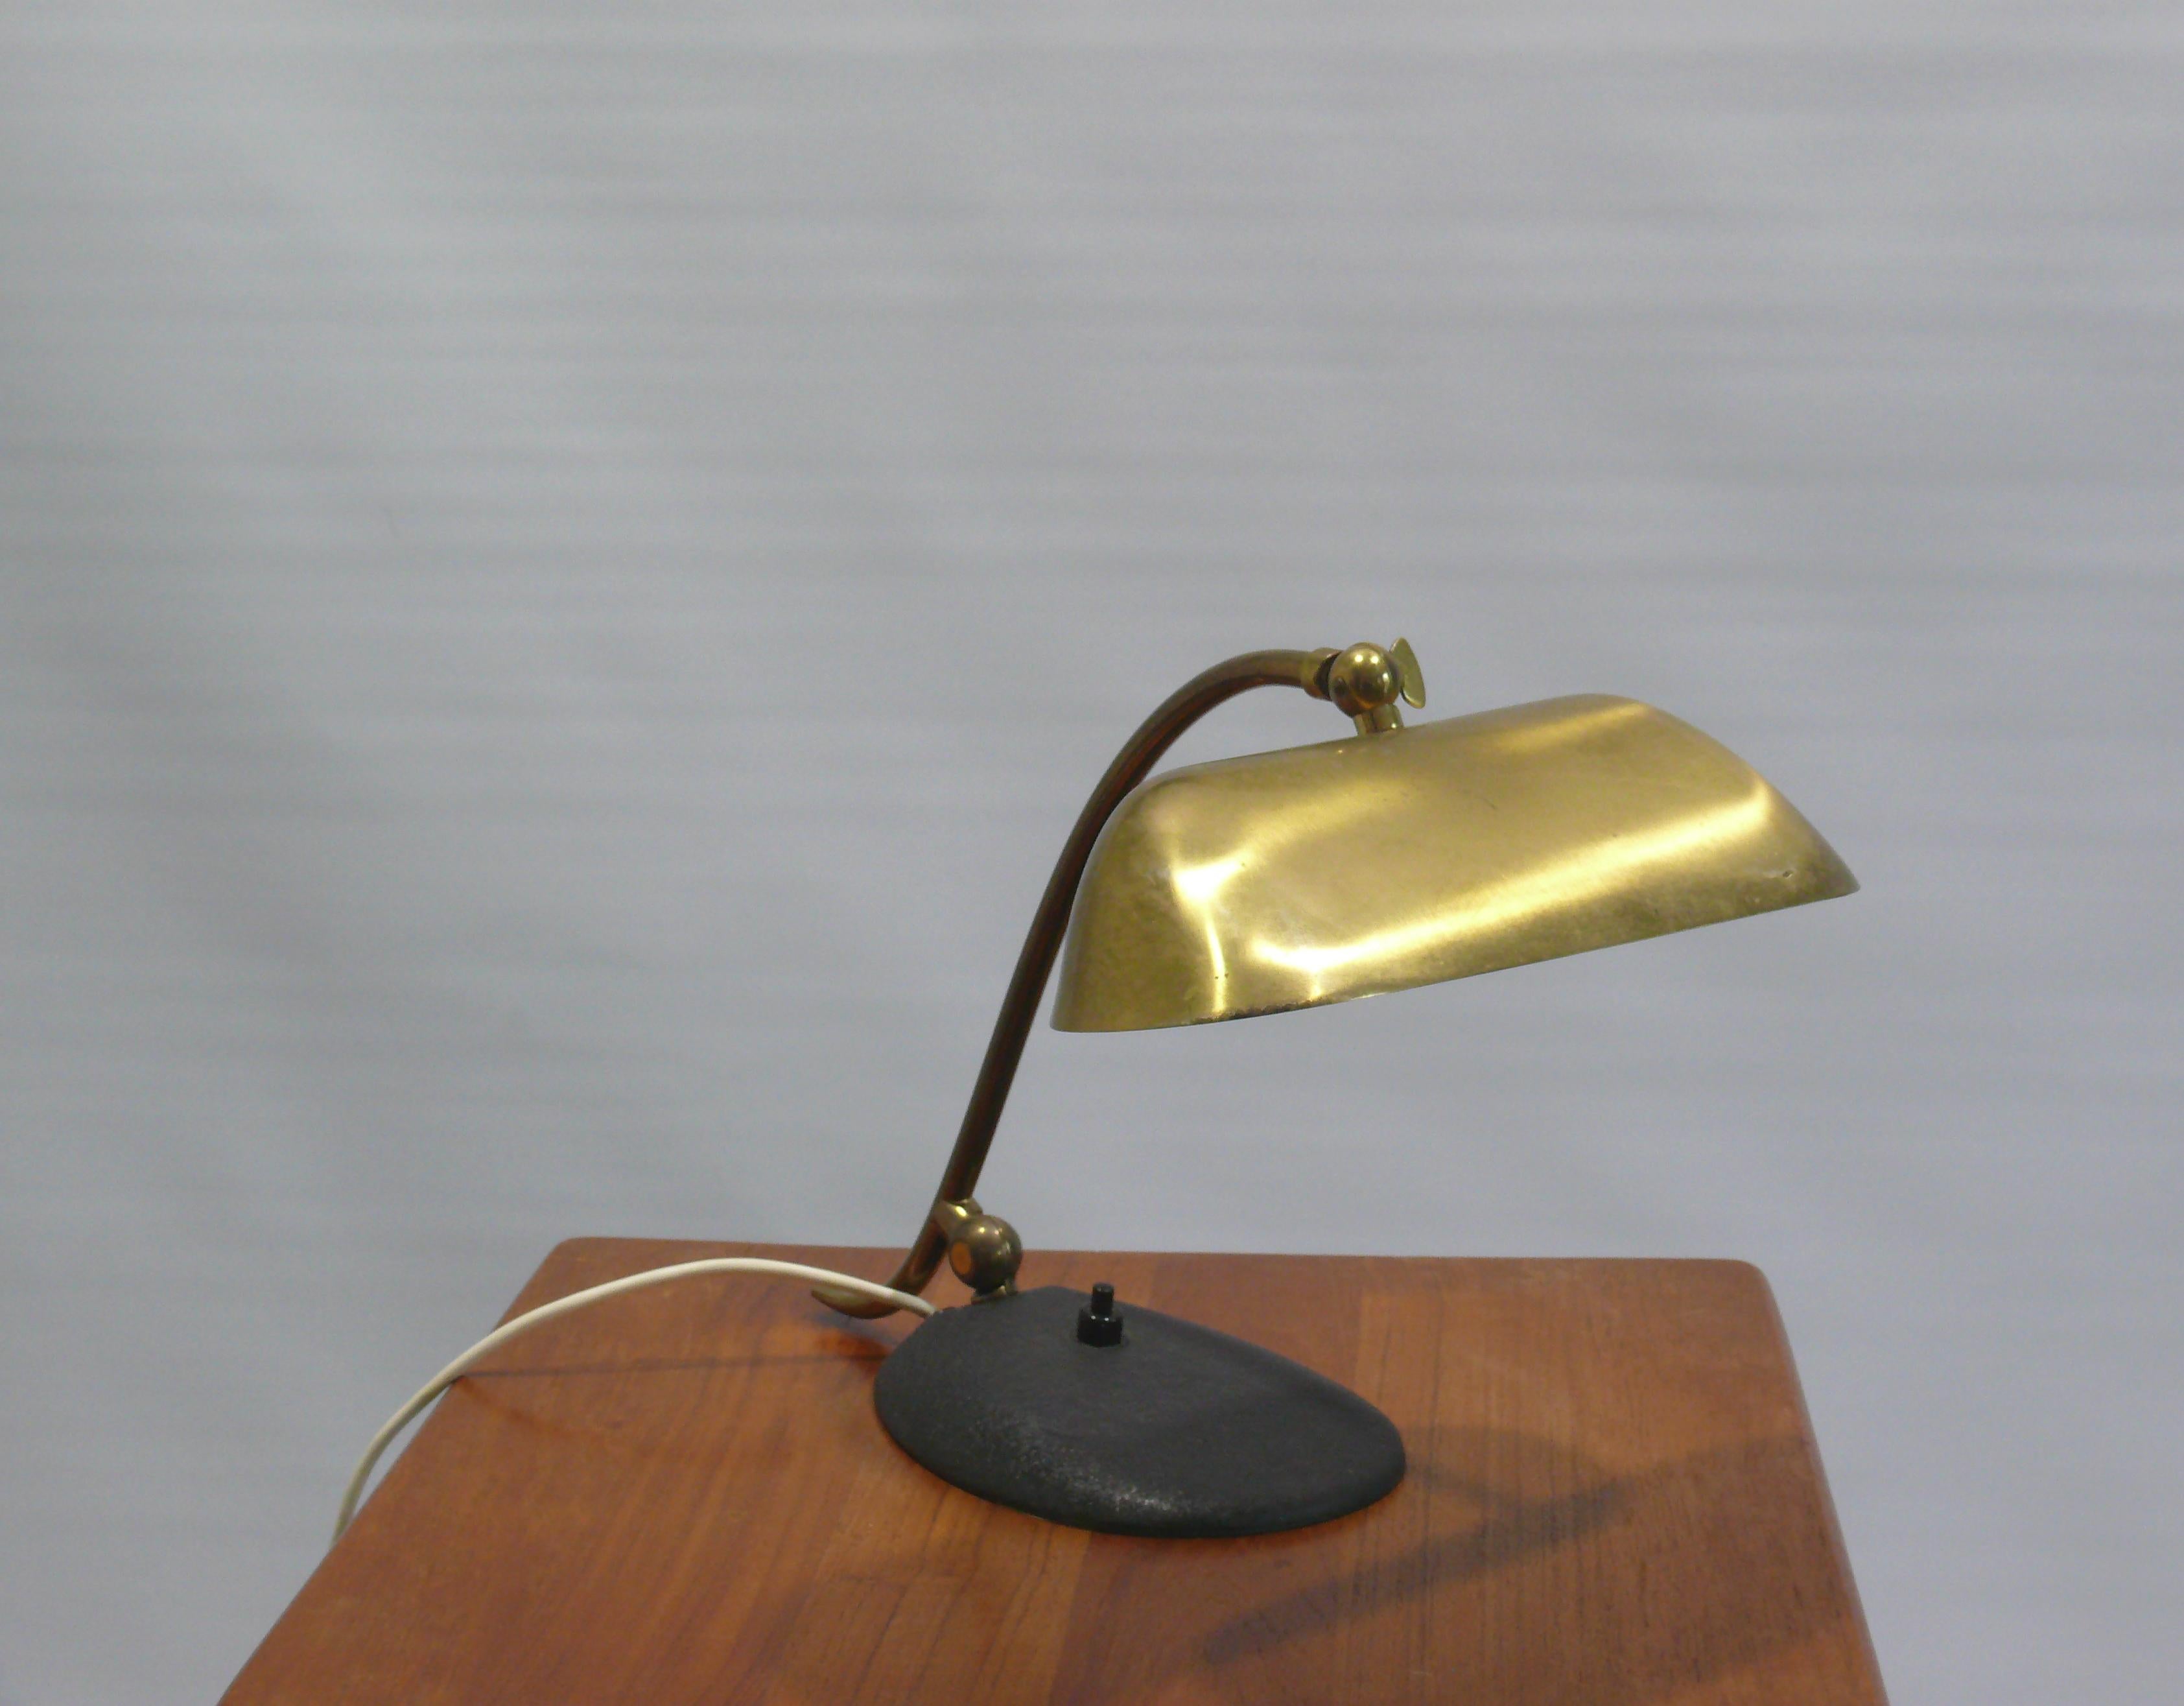 Très solide et rare lampe de piano en laiton des années 1950 - 1960. La lampe ne porte plus le Label du fabricant. Mais il s'agit soit d'une lampe de la société JBS (Joseph Brumberg Sundern), soit d'une lampe à piano de la société suédoise ORO.
La